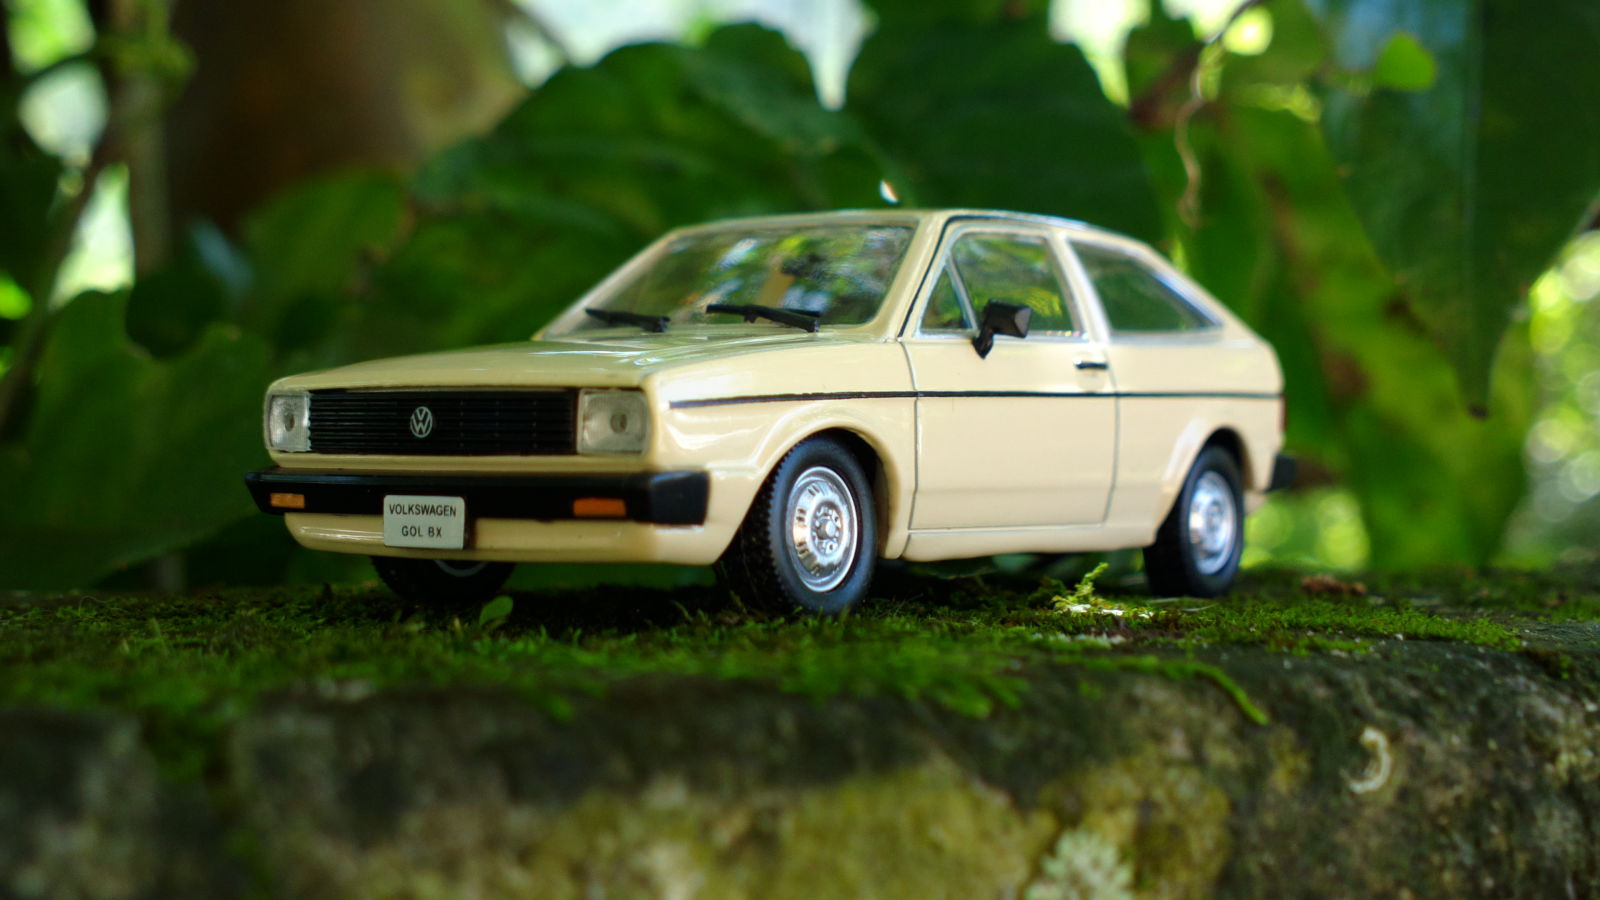 1981 Volkswagen Gol BX